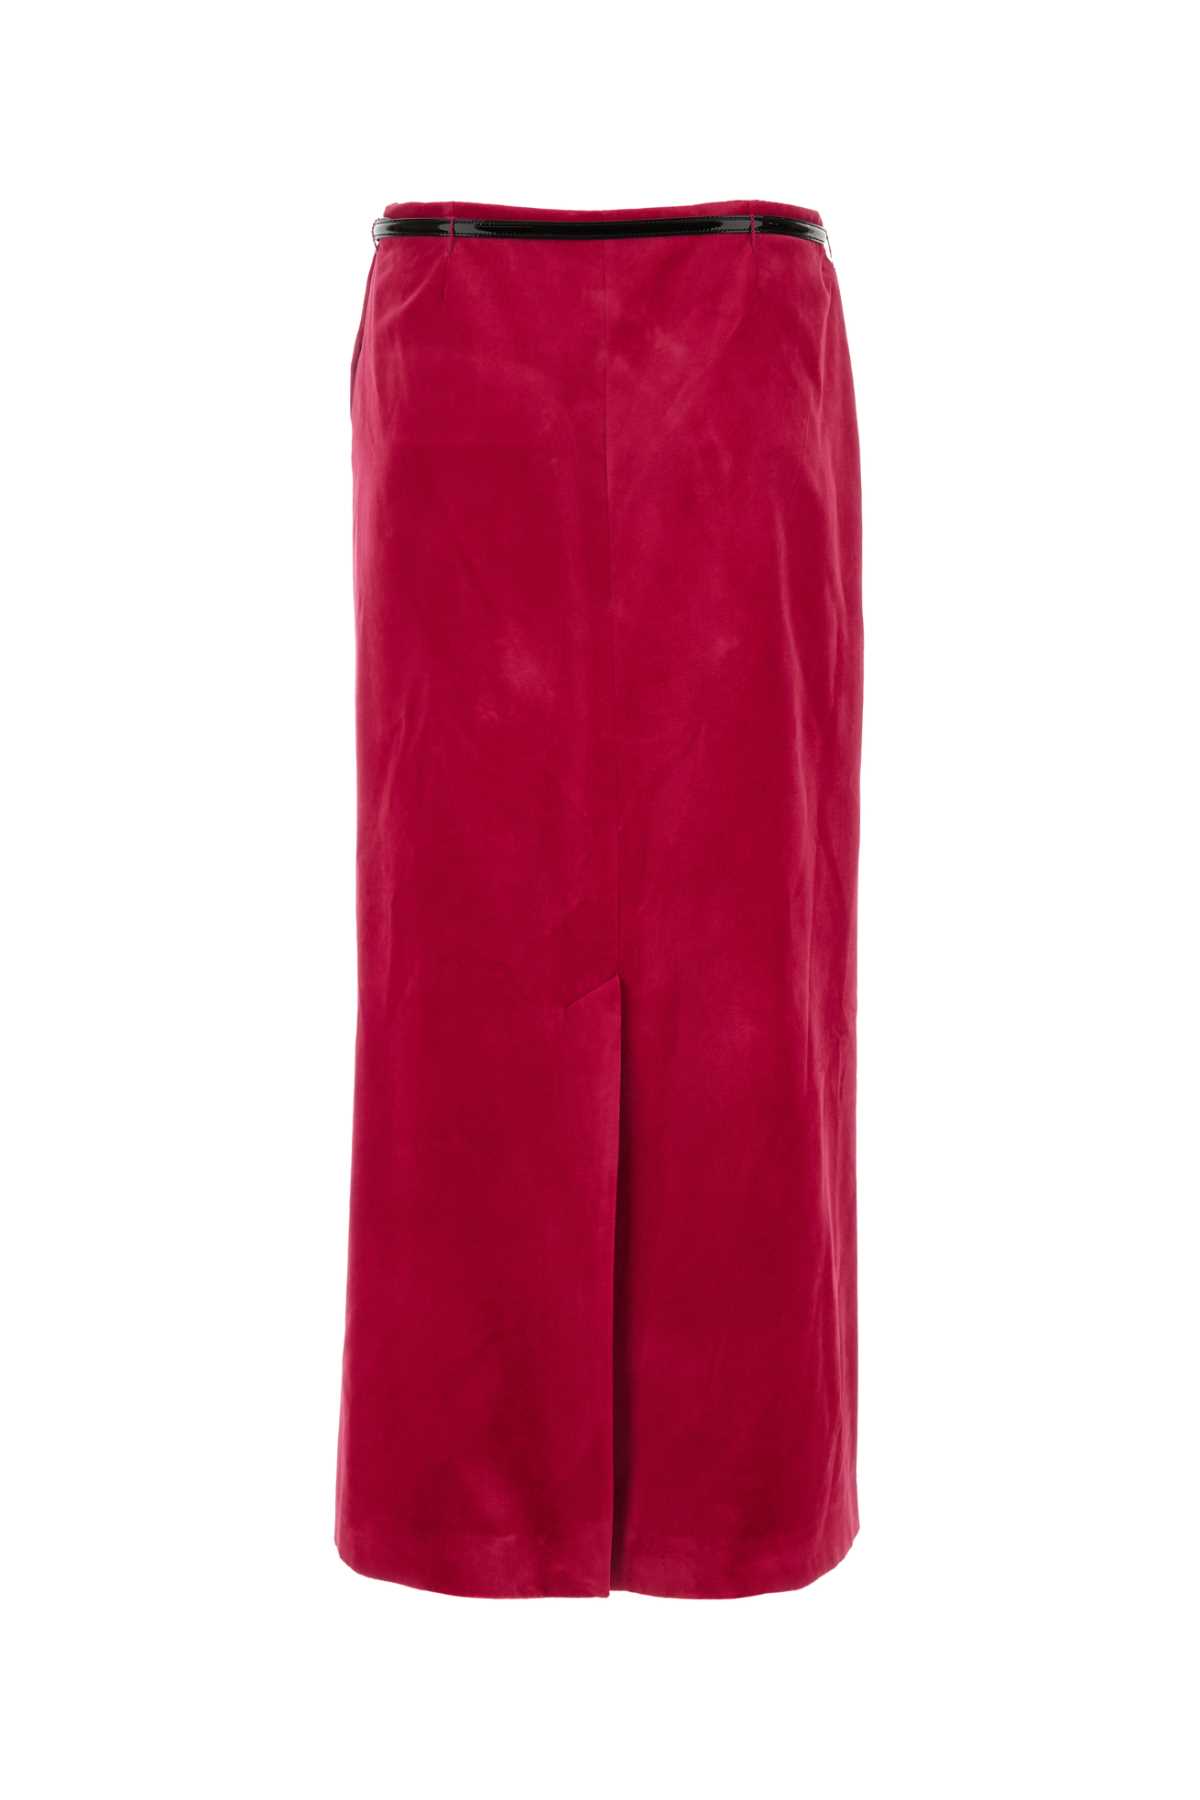 Gucci Fuchsia Velvet Skirt In 5944